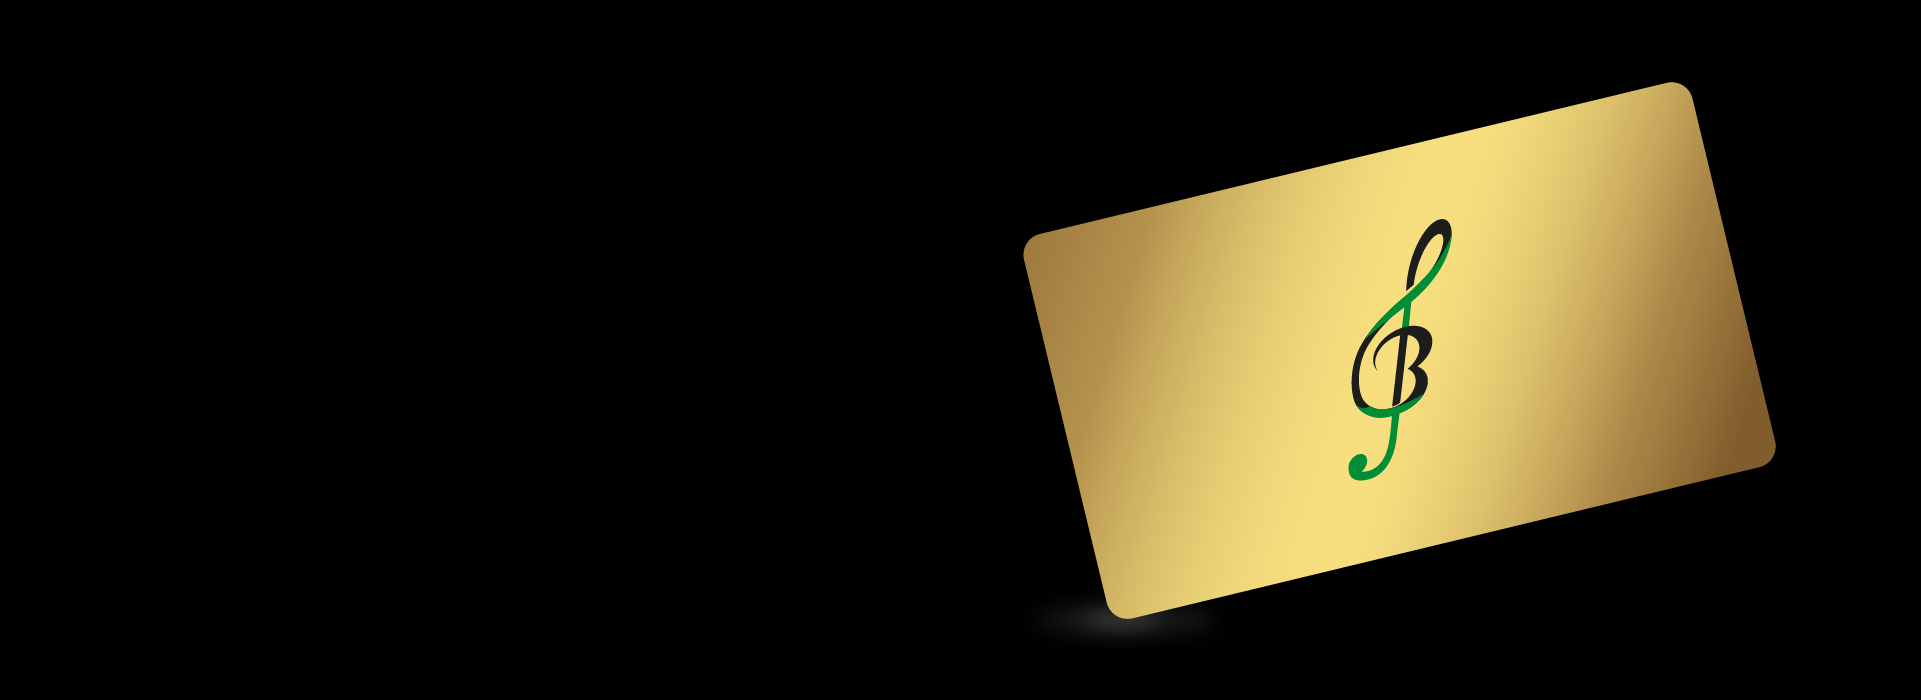 Teatro-Beethoven-gold card-slider